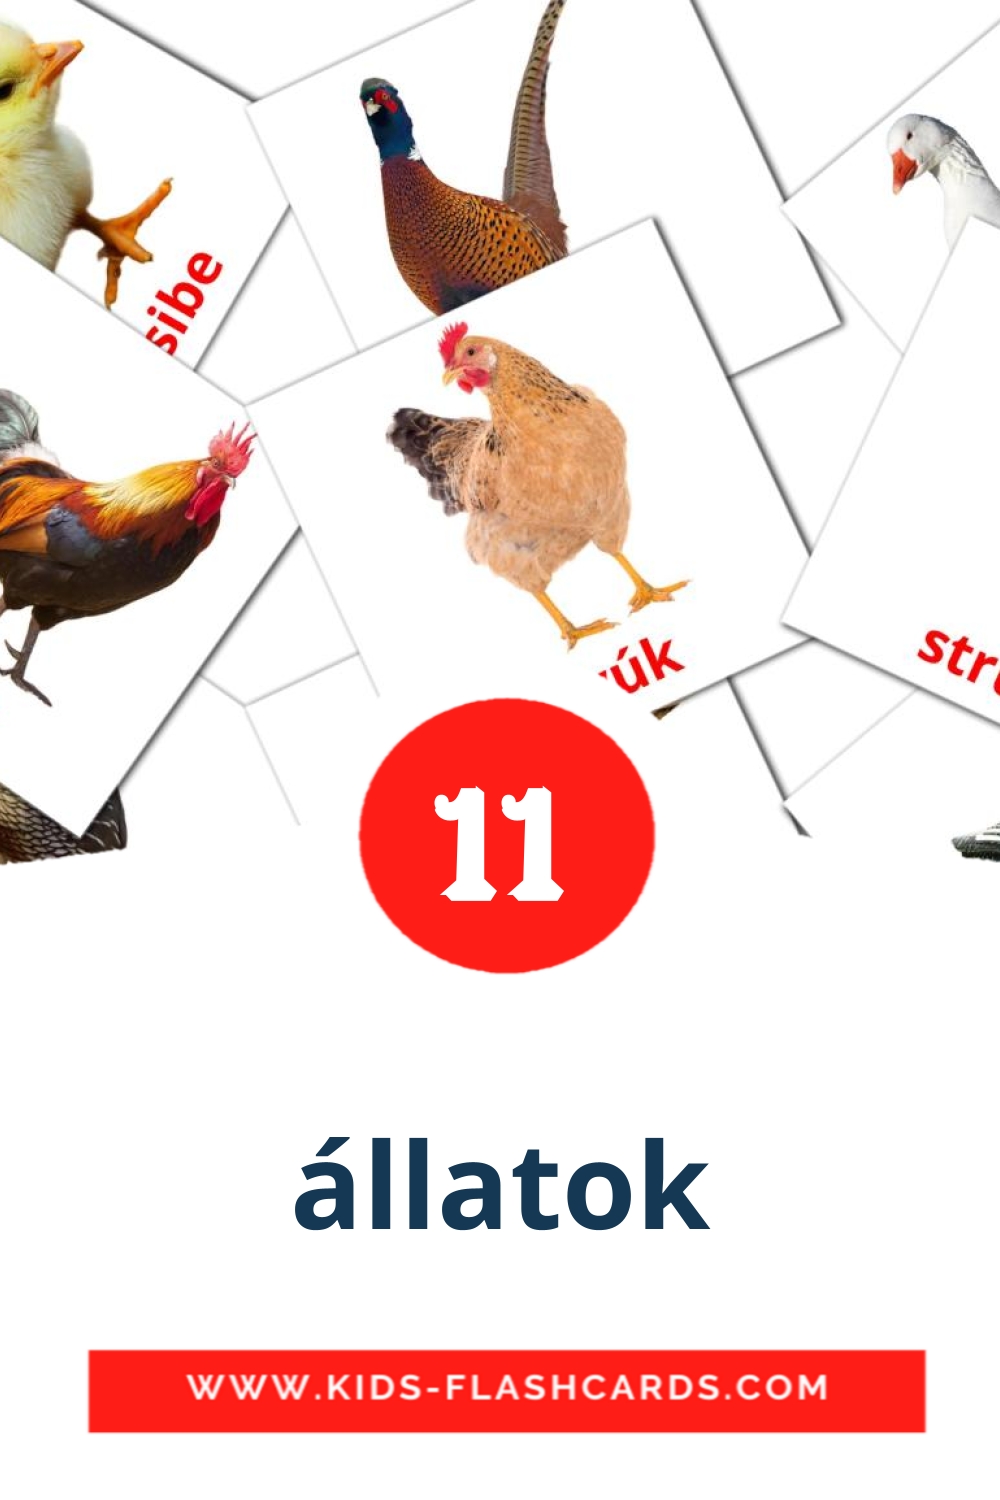 11 állatok fotokaarten voor kleuters in het ahmaric